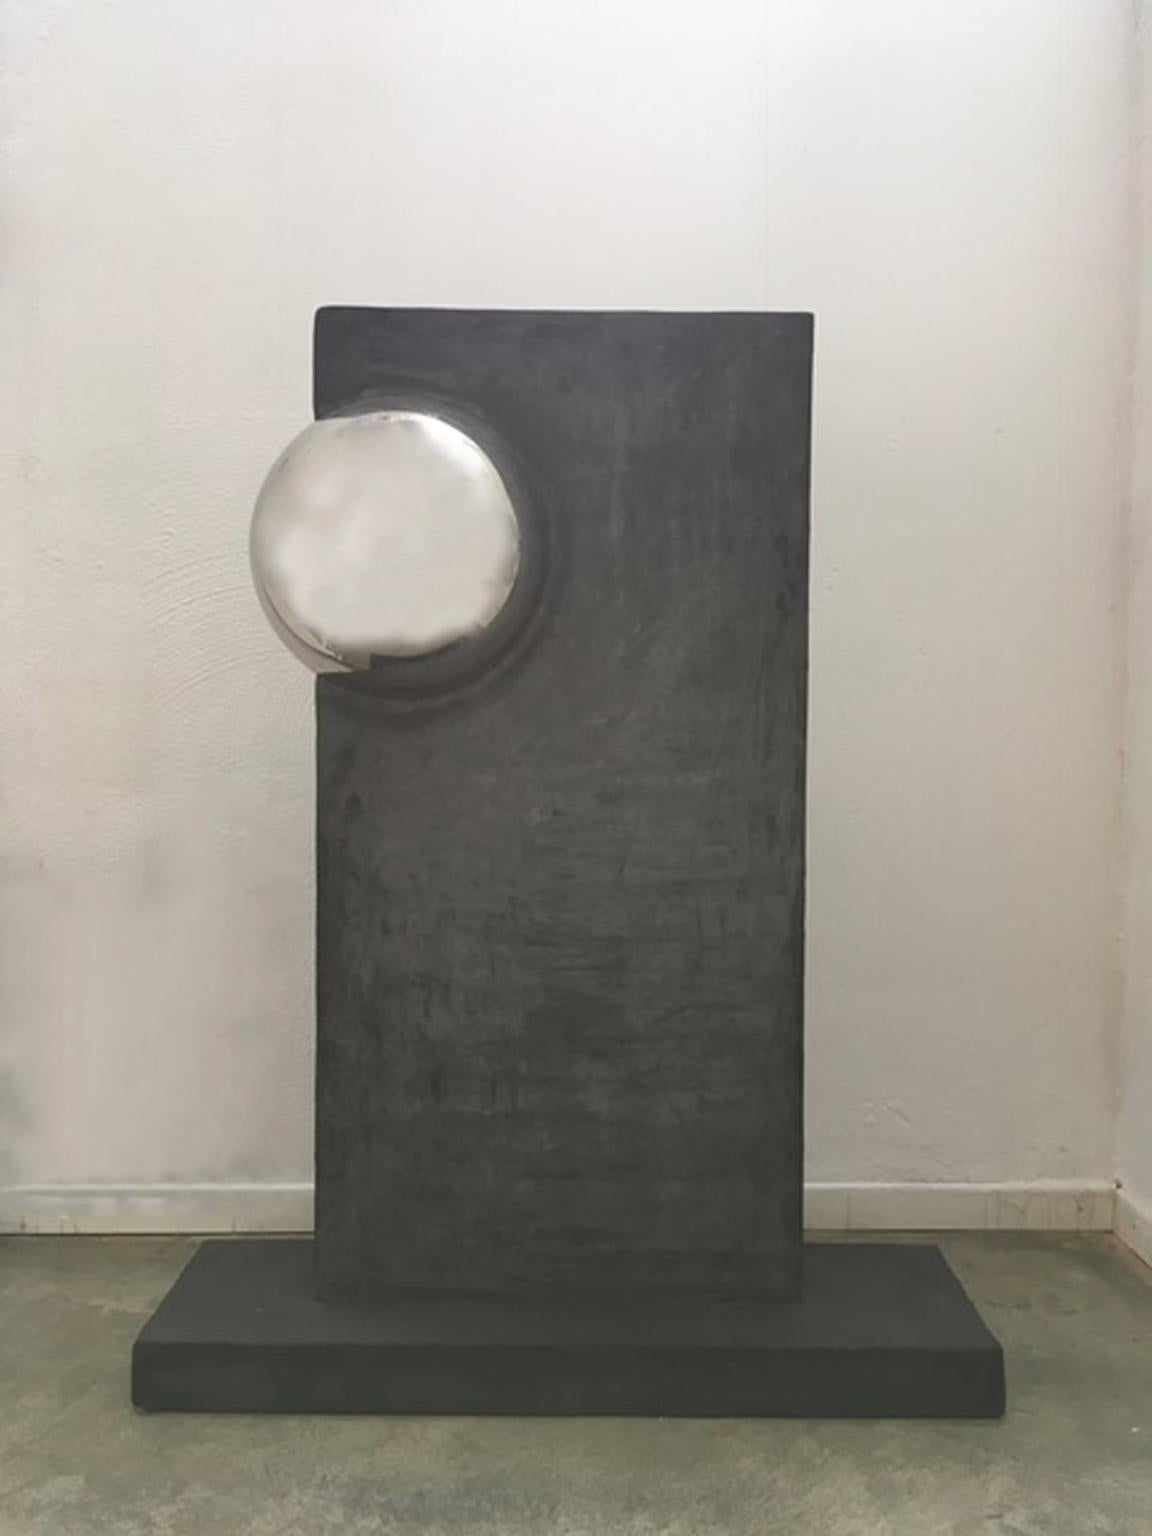 Stele avec sphère Italie 2000 Polyester Grey Colored Mortar avec sphère chromée